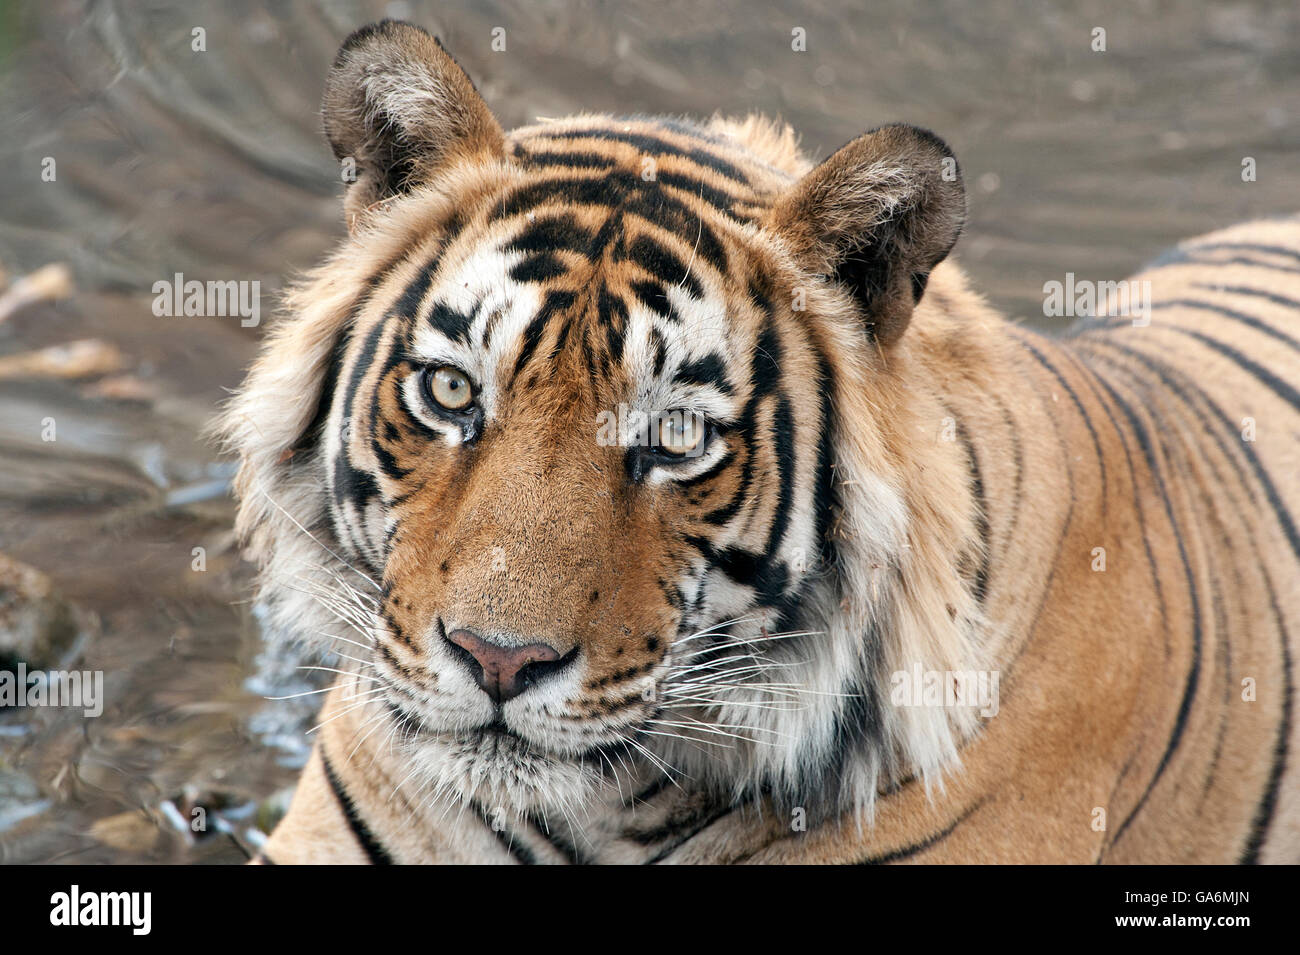 L'image de Tiger ( Panthera tigris ) T57 a été prise à Ranthambore, Inde Banque D'Images